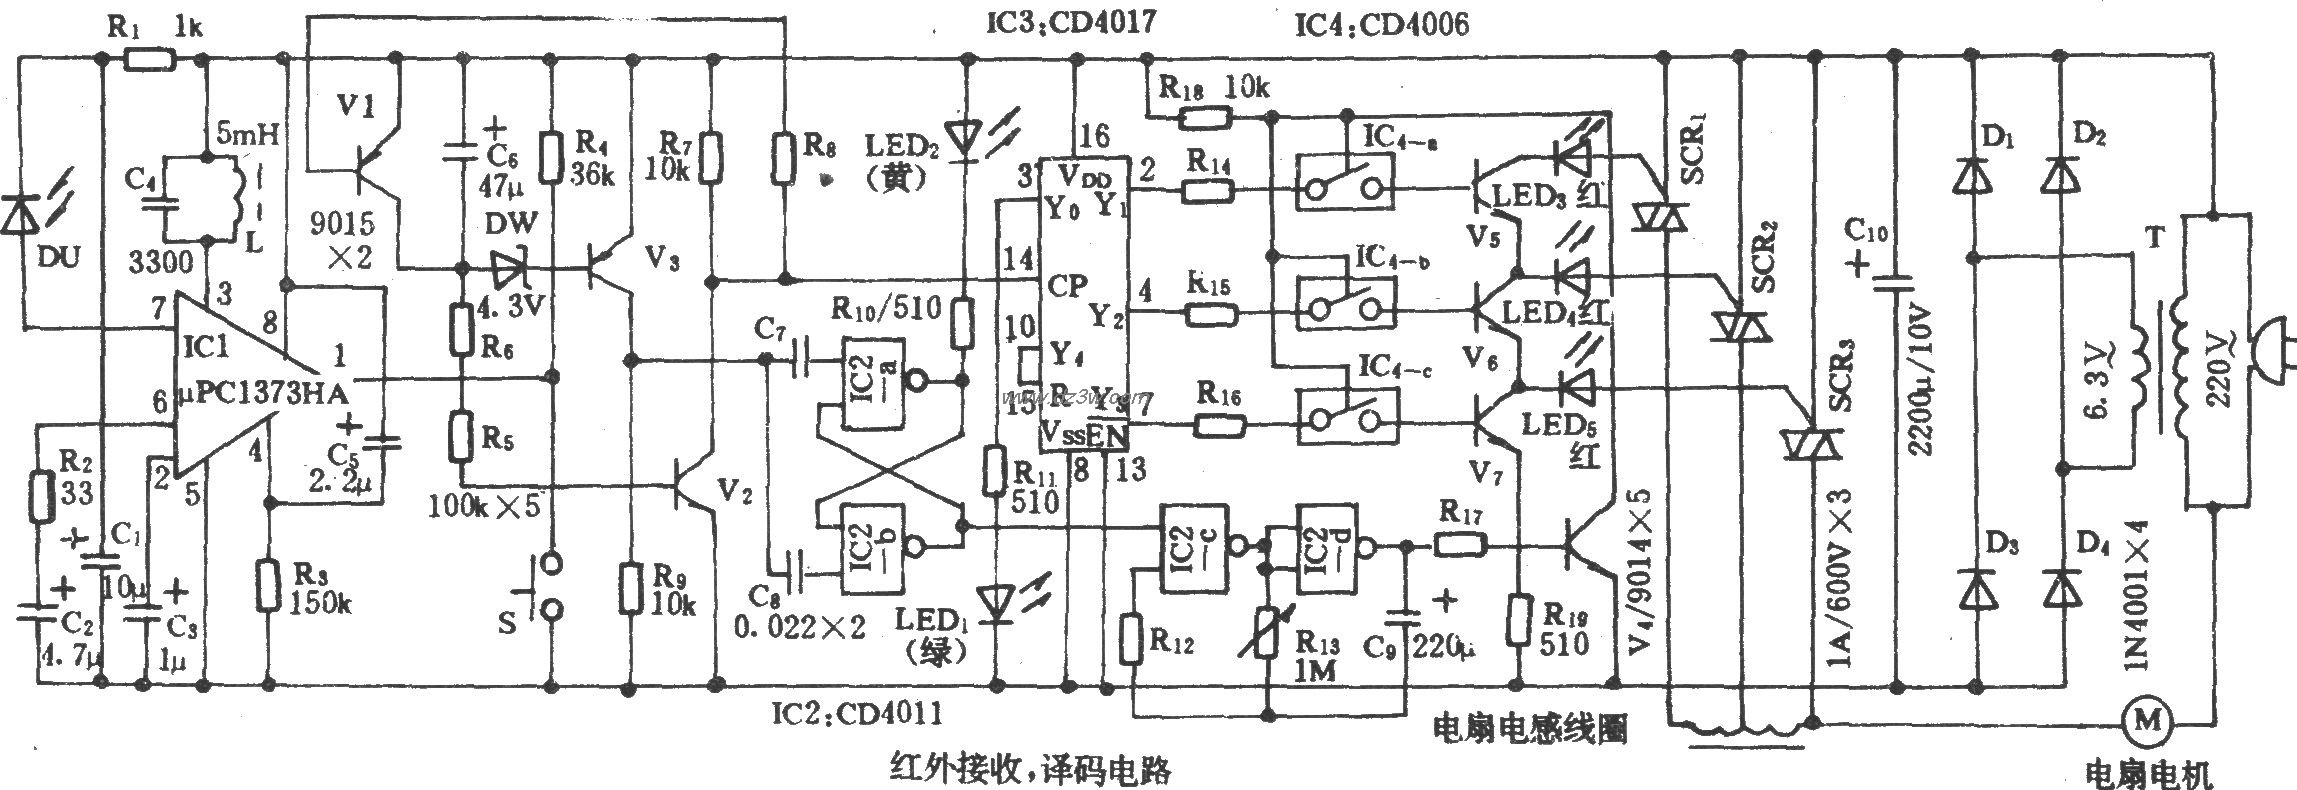 電風扇紅外遙控電路(4)